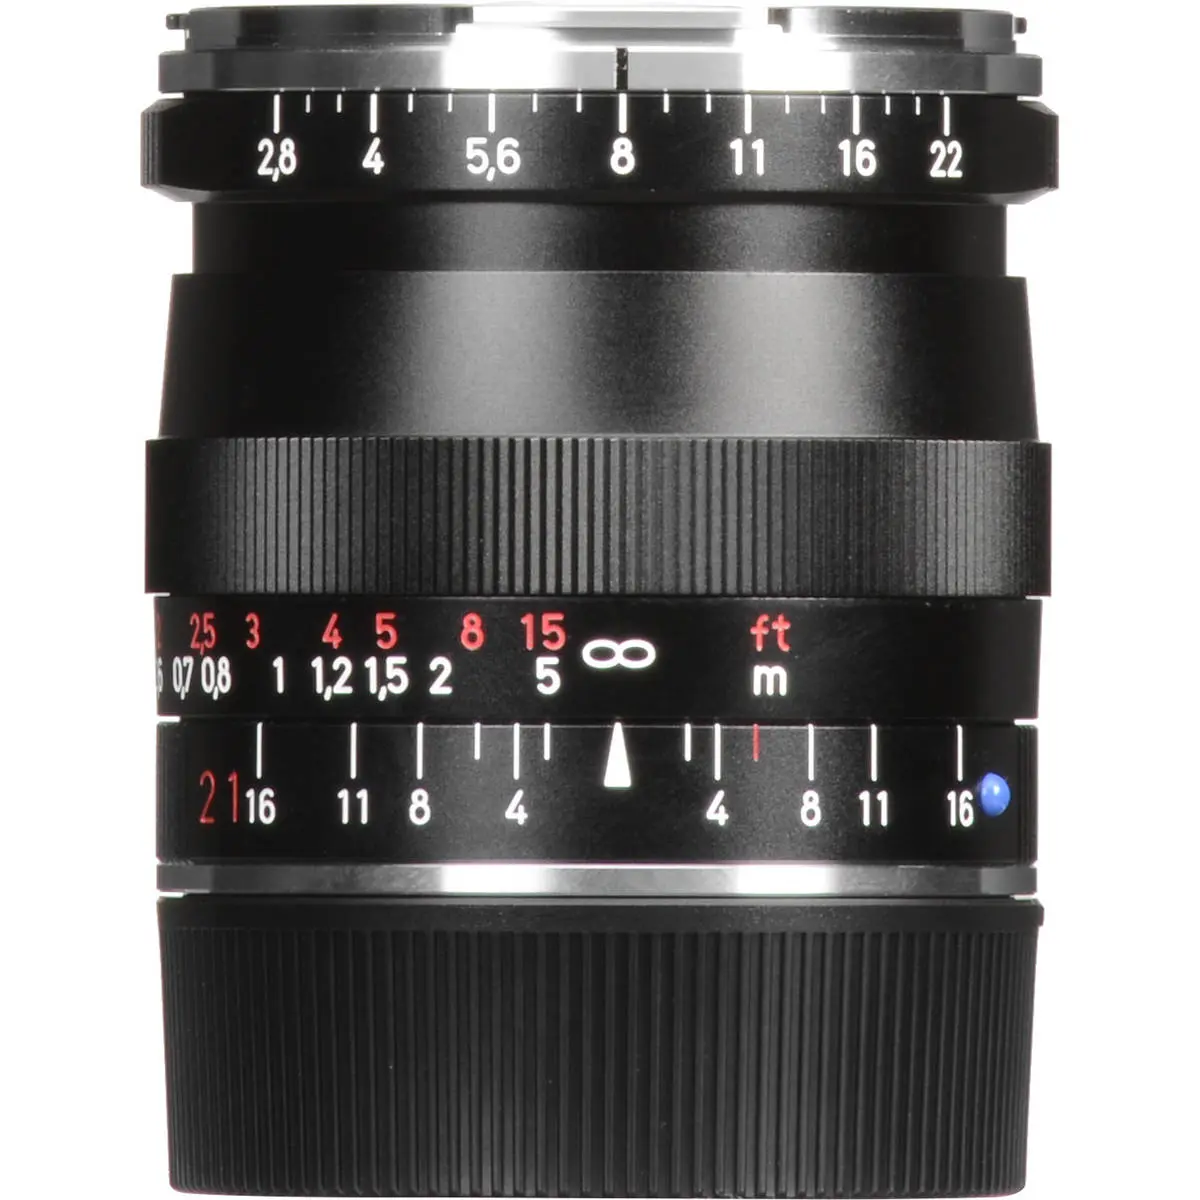 5. Carl Zeiss 21mm F/2.8 BIOGON T* ZM (Leica M) Black Lens